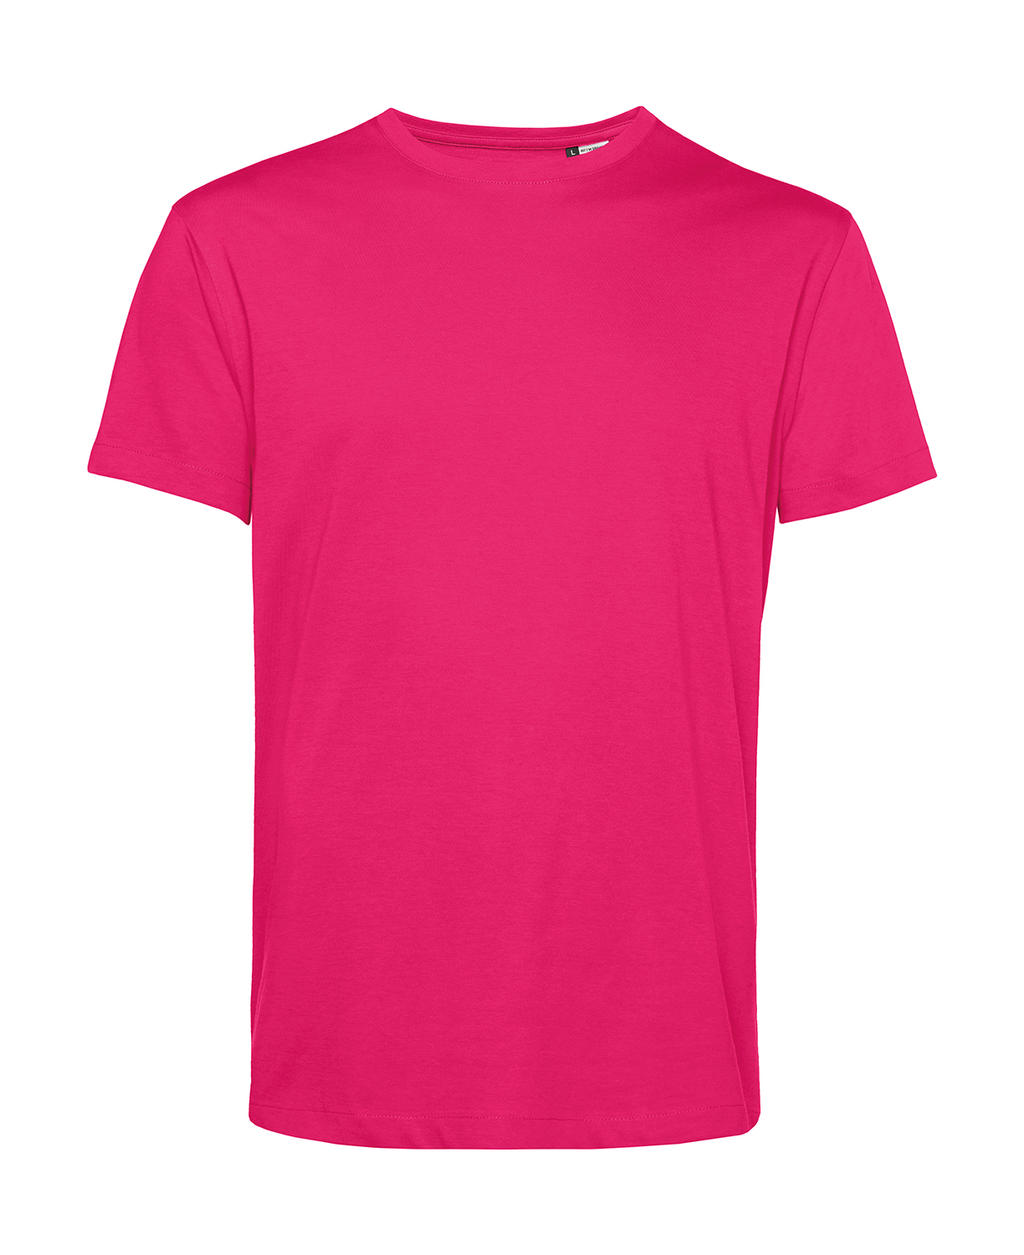 Tričko BC Organic Inspire E150 - tmavě růžové, XL